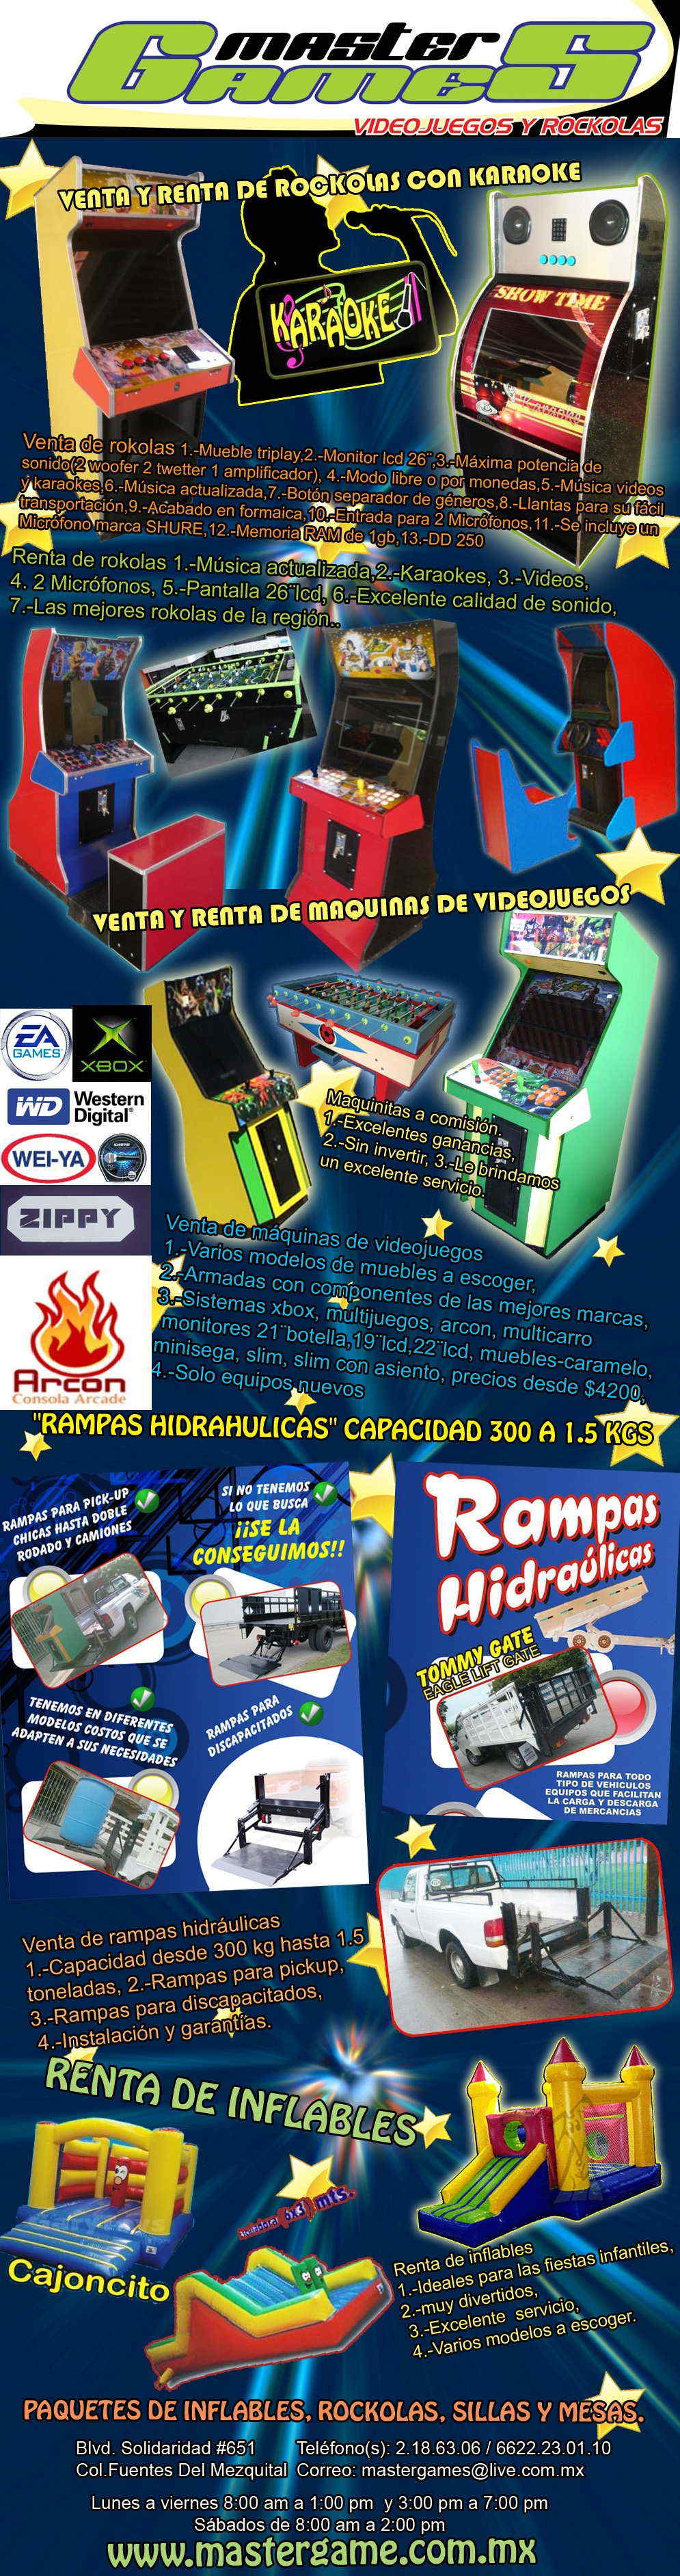 Master Games, Videojuegos y Rockolas-Venta, Renta y servicio de equipos recreativos, Rockolas, maquinas de videojuegos, simuladores.            